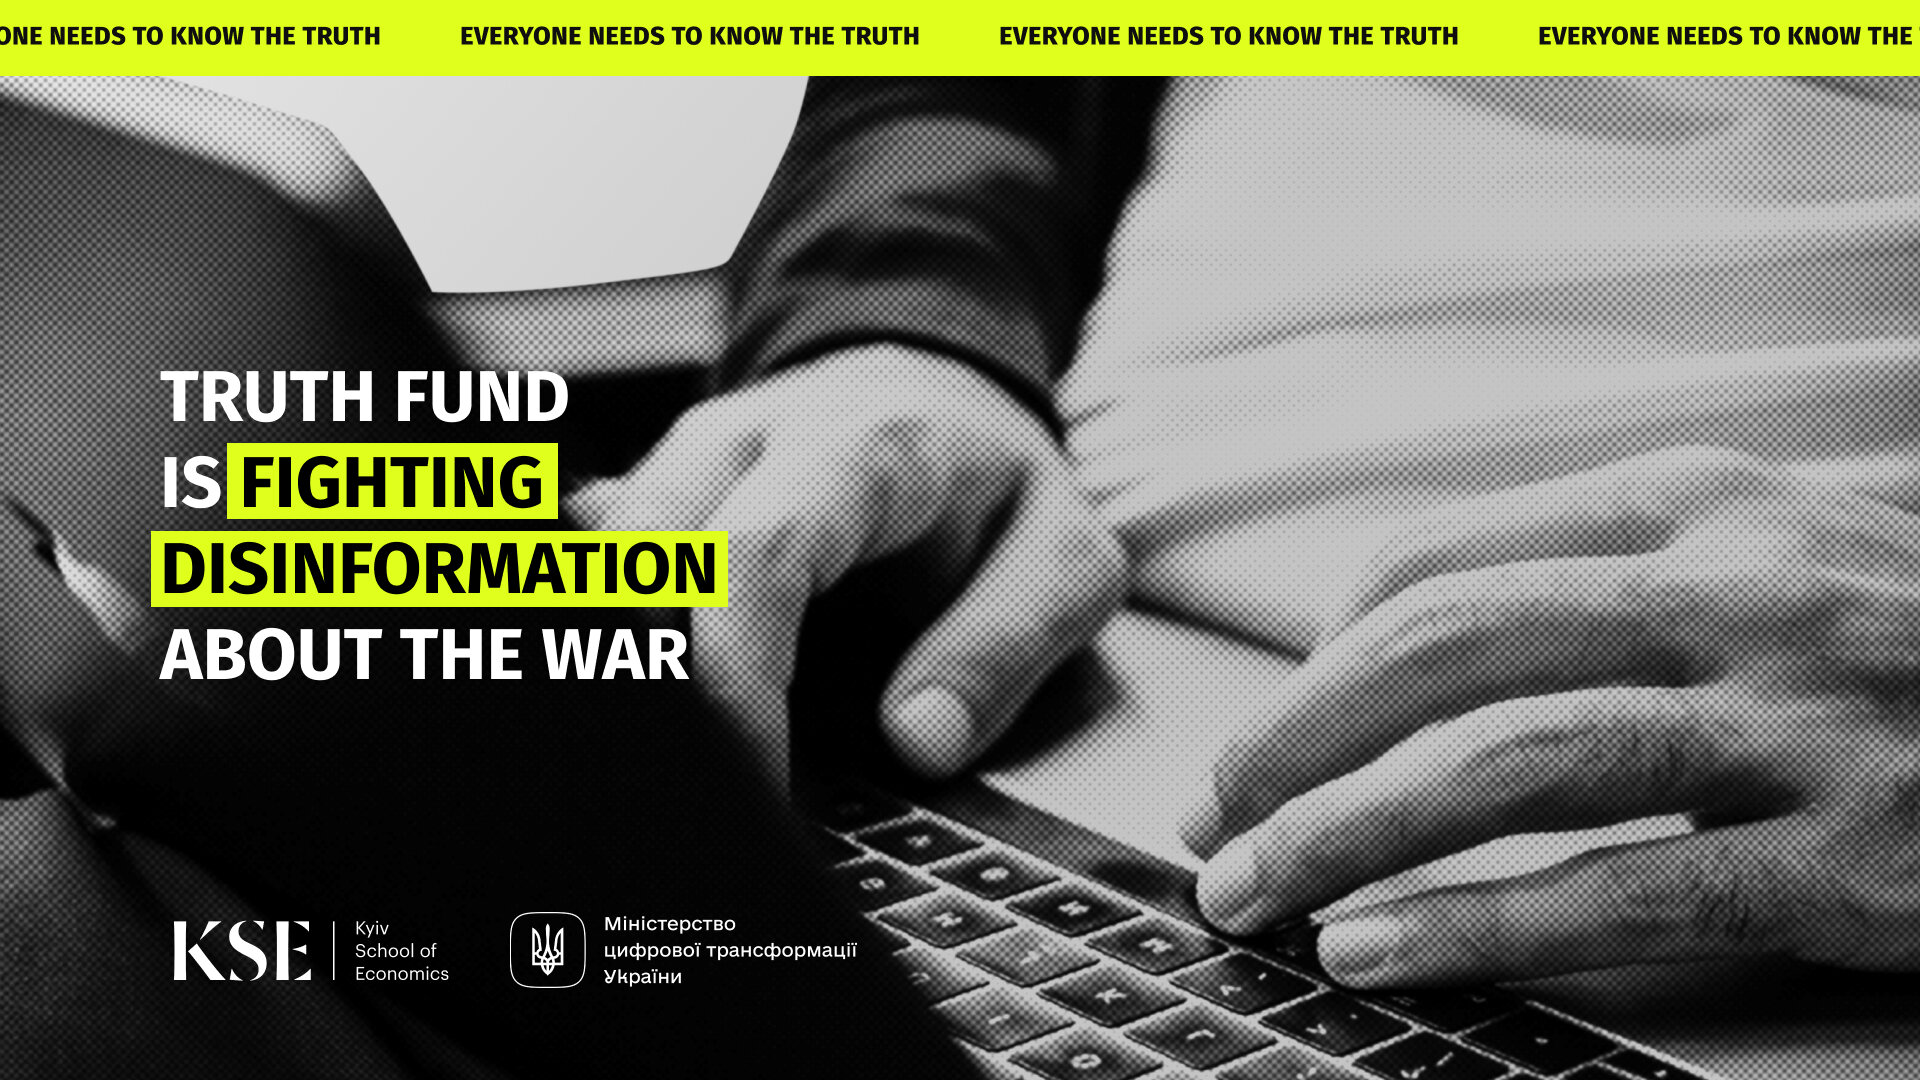 وزارة التحول الرقمي في أوكرانيا تطلق صندوق “الحقيقة” لمواجهة الأكاذيب الروسية